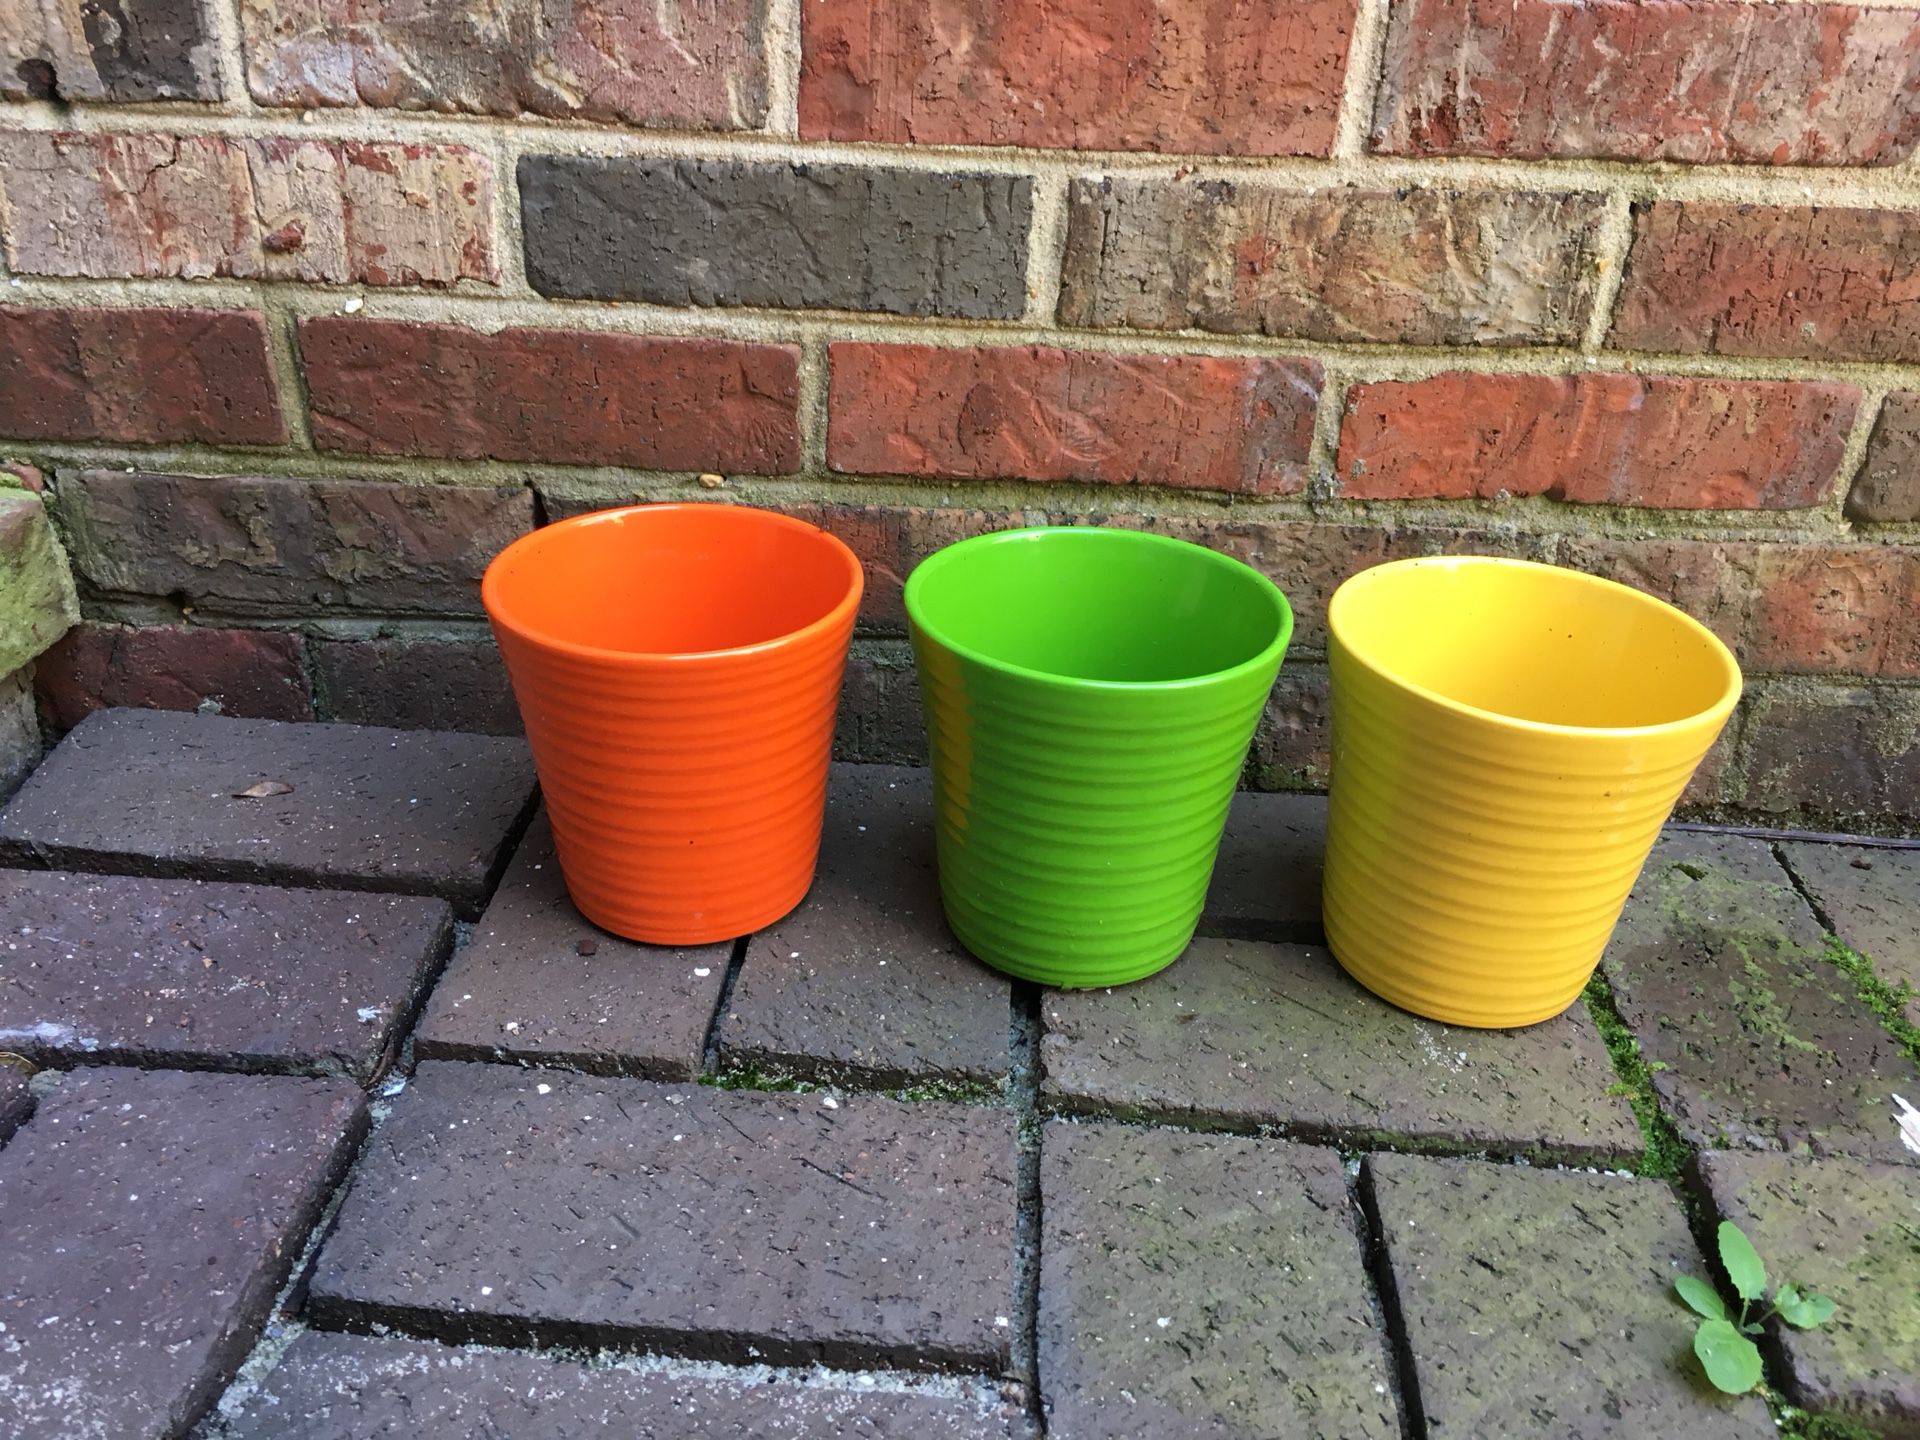 Vibrant colored small ceramic flower pots